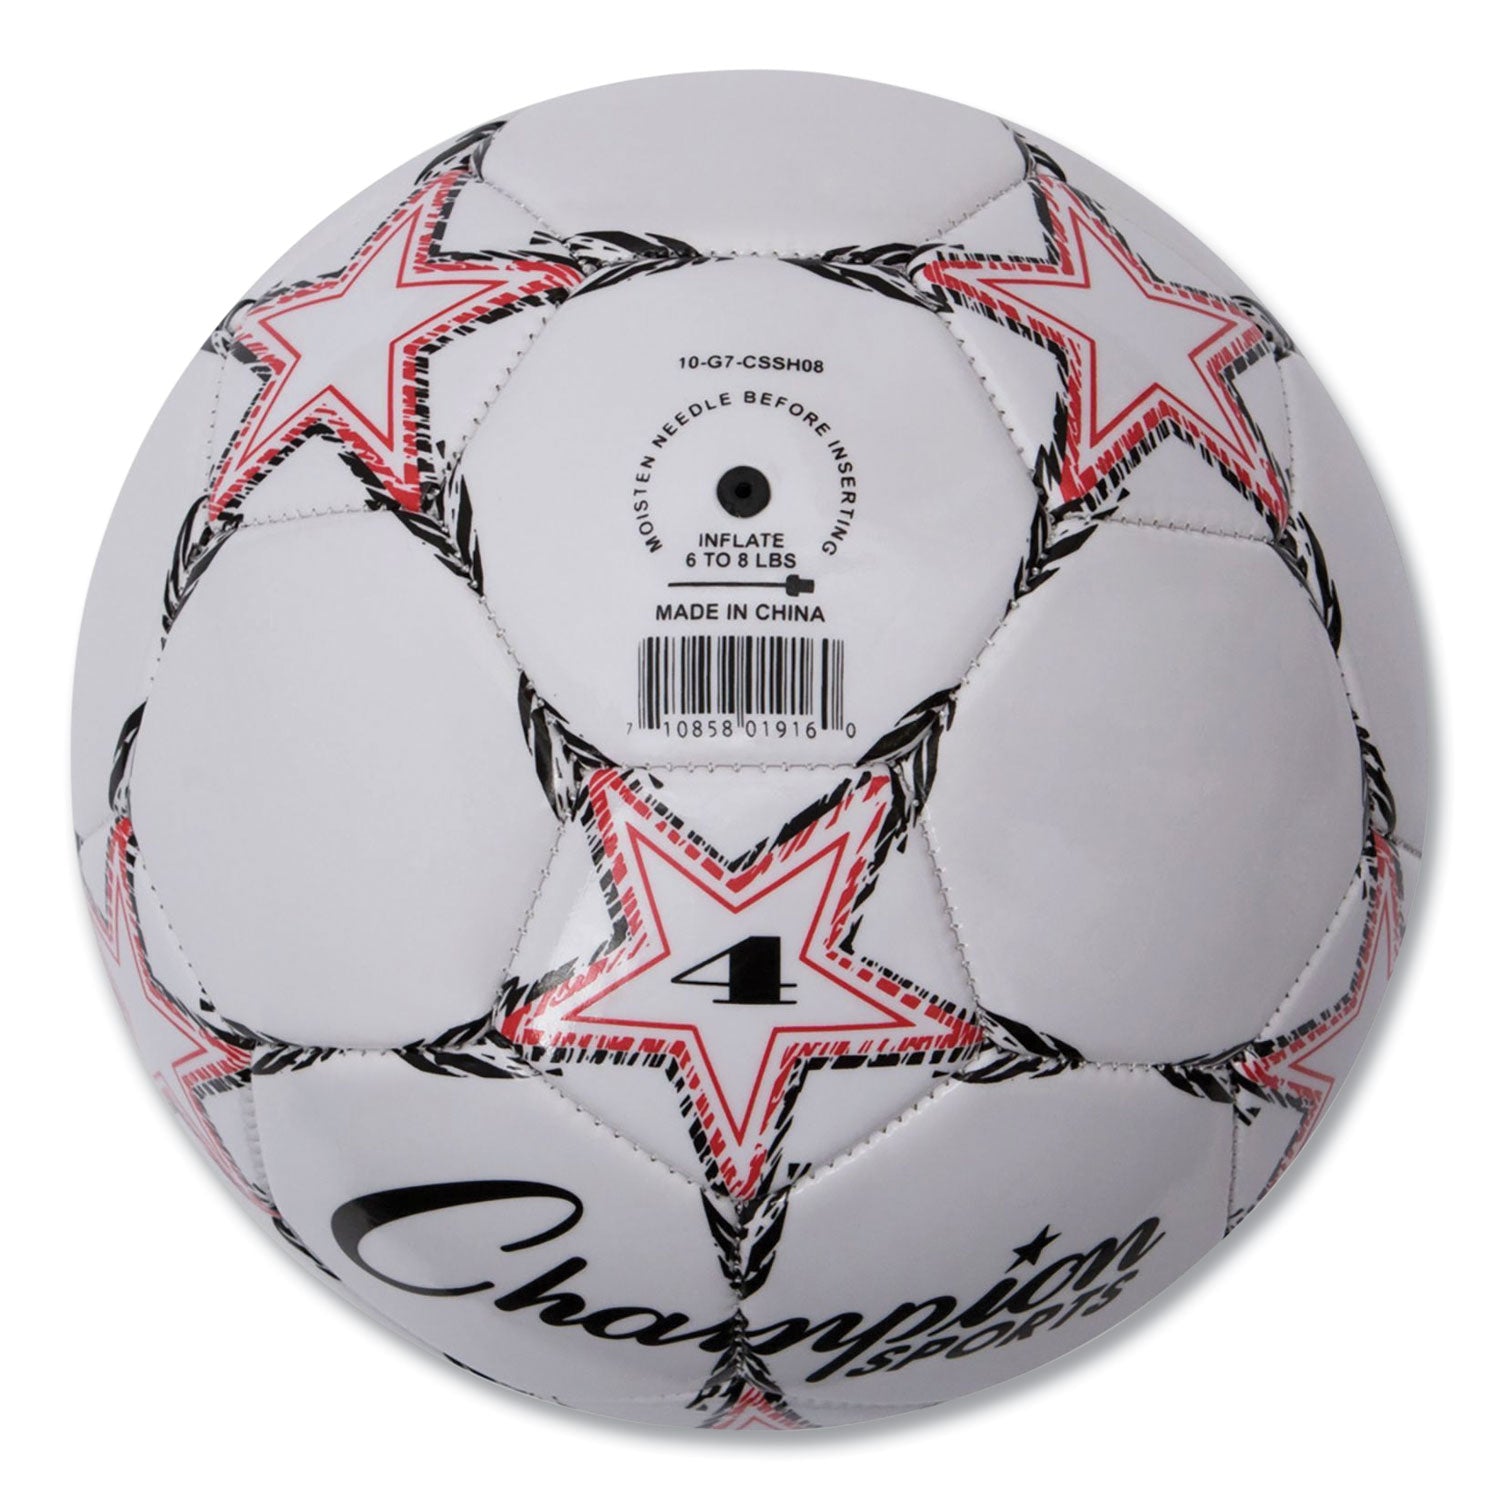 VIPER Soccer Ball, No. 4 Size, 8" to 8.25" Diameter, White - 